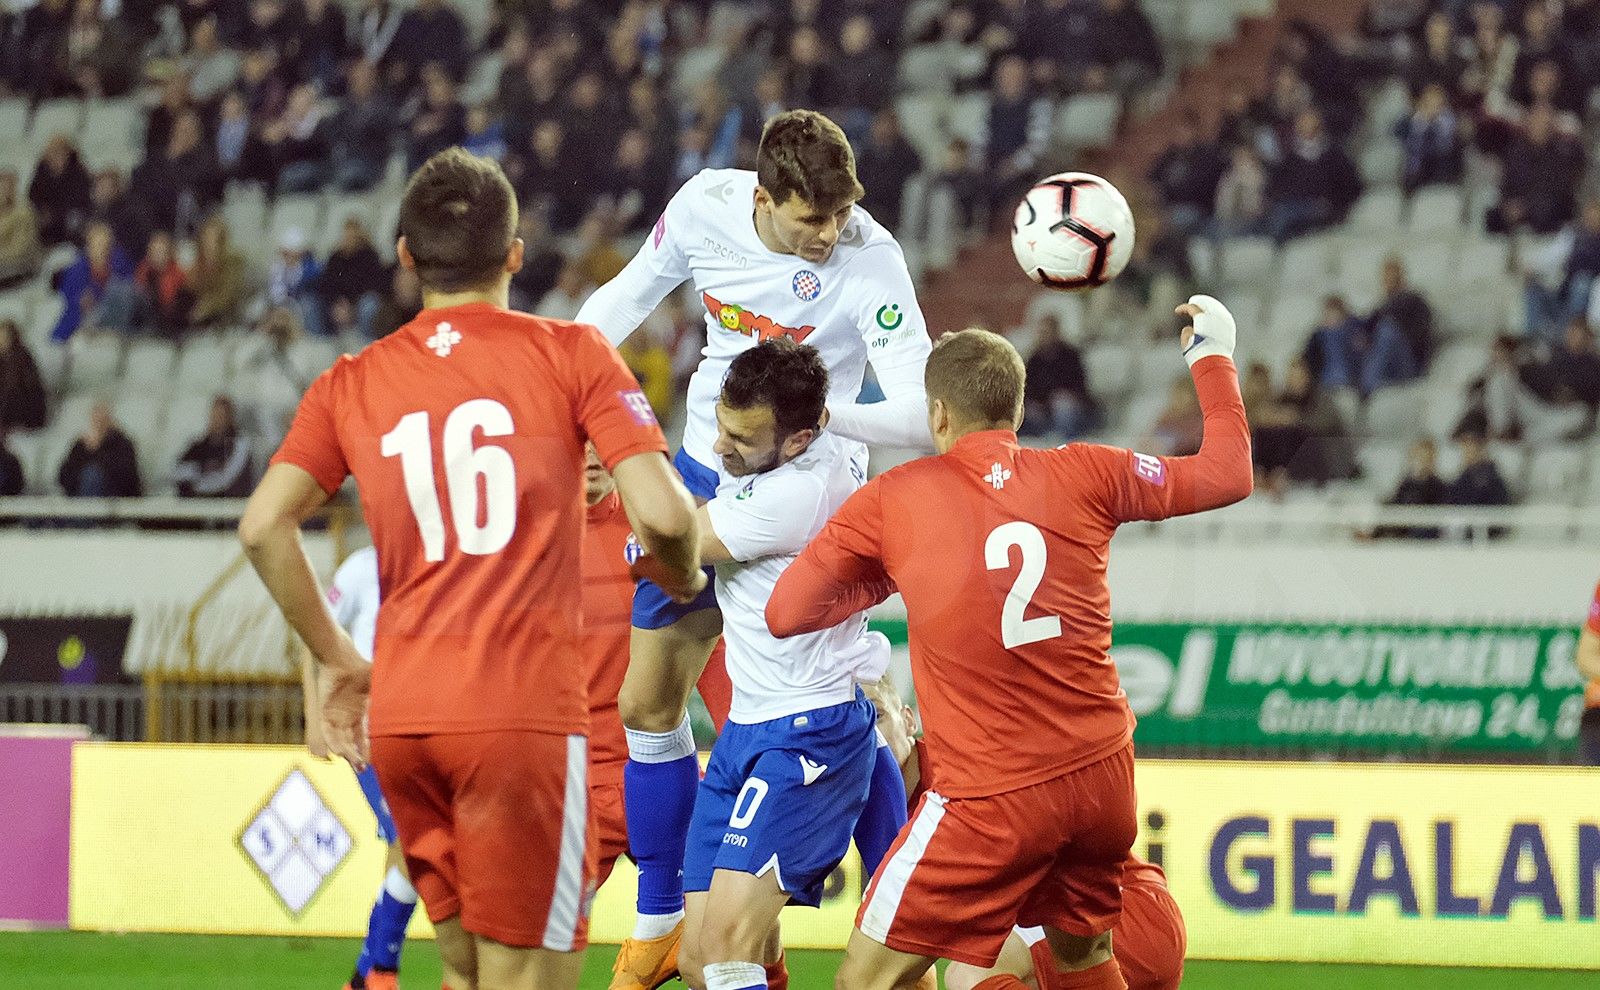 NK Osijek vs Hajduk Split Predictions